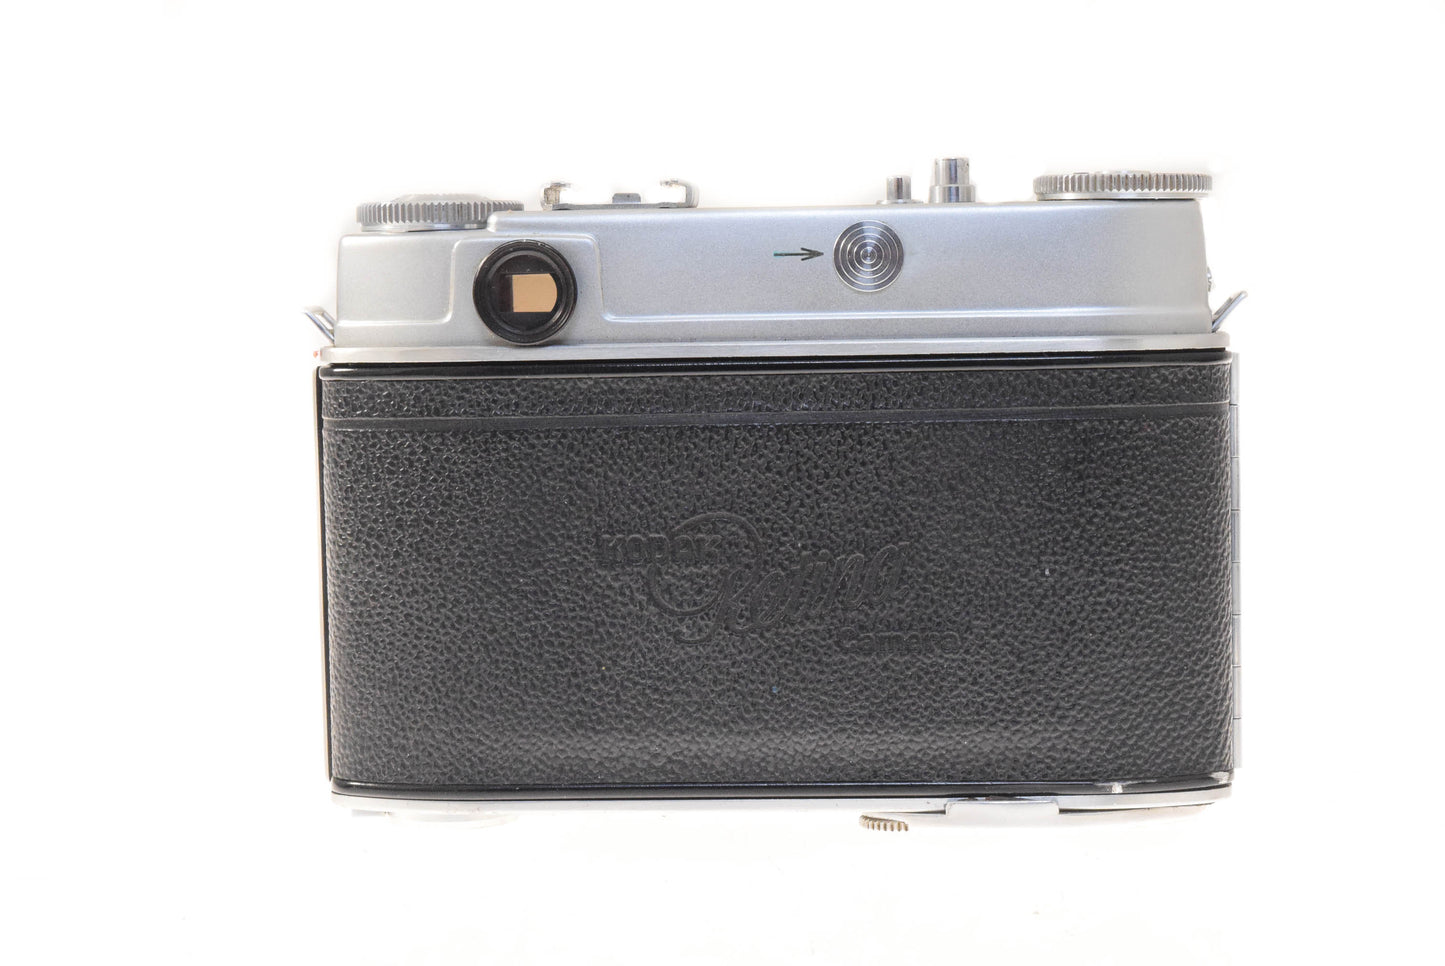 Kodak Retina IIIc (Type 021)